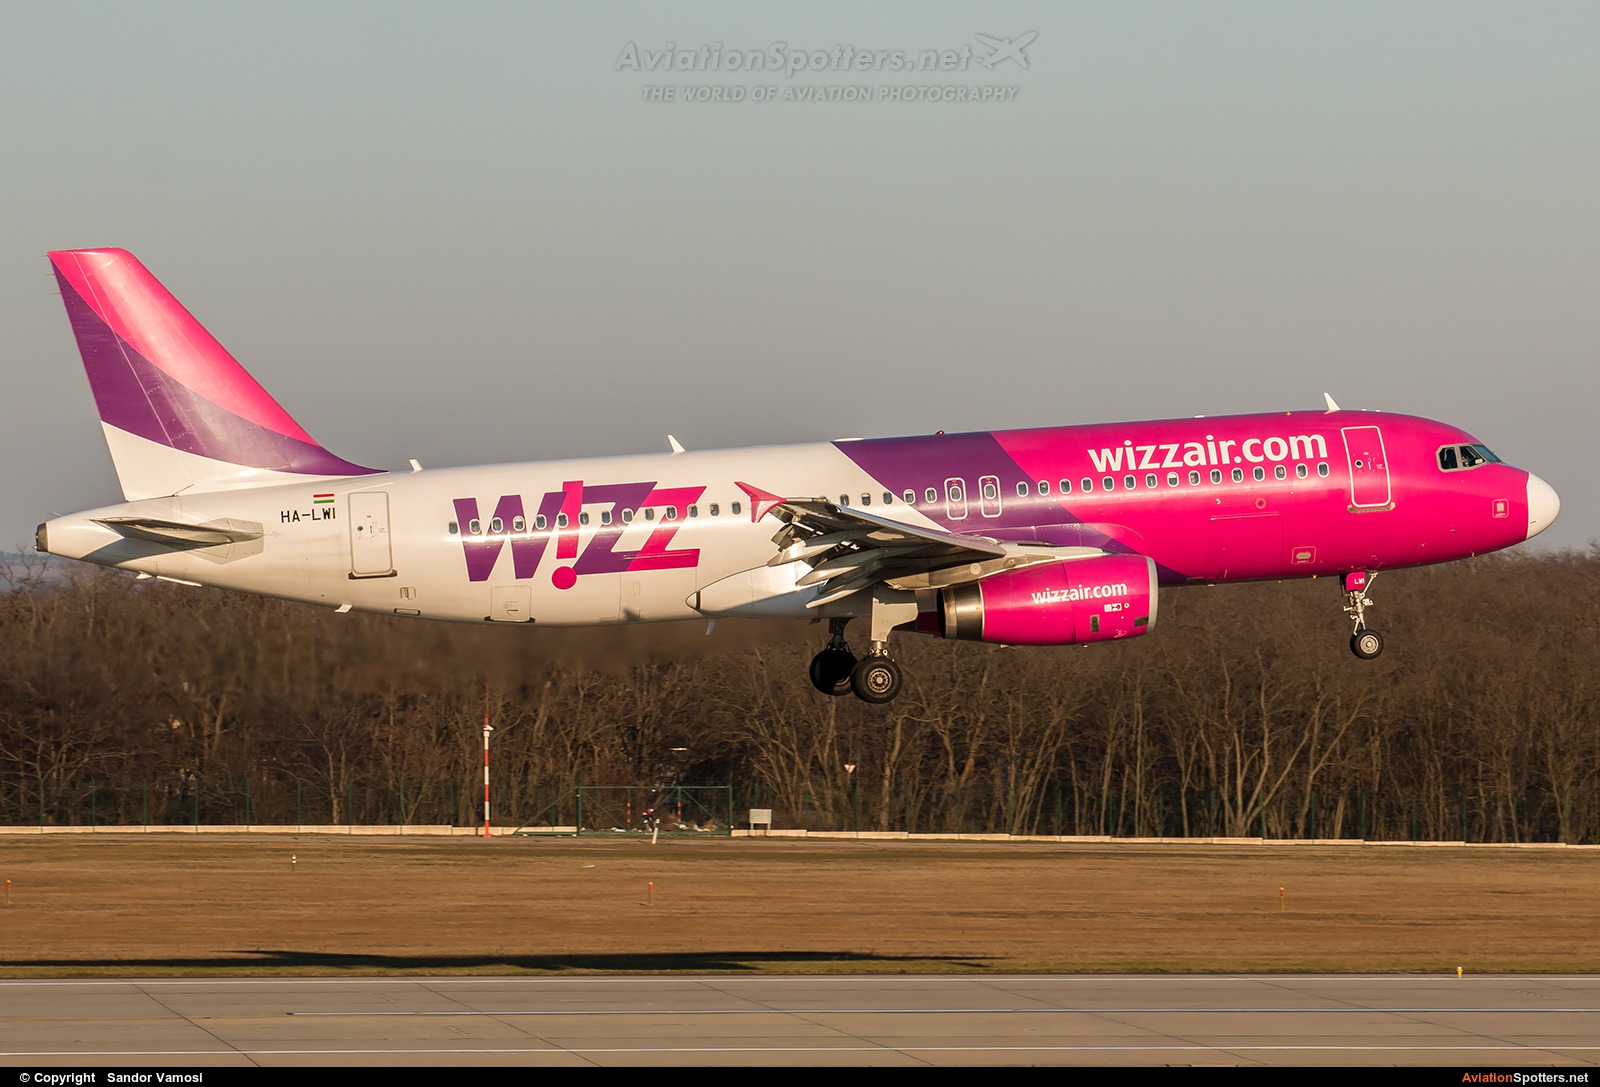 Wizz Air  -  A320  (HA-LWI) By Sandor Vamosi (ALEX67)